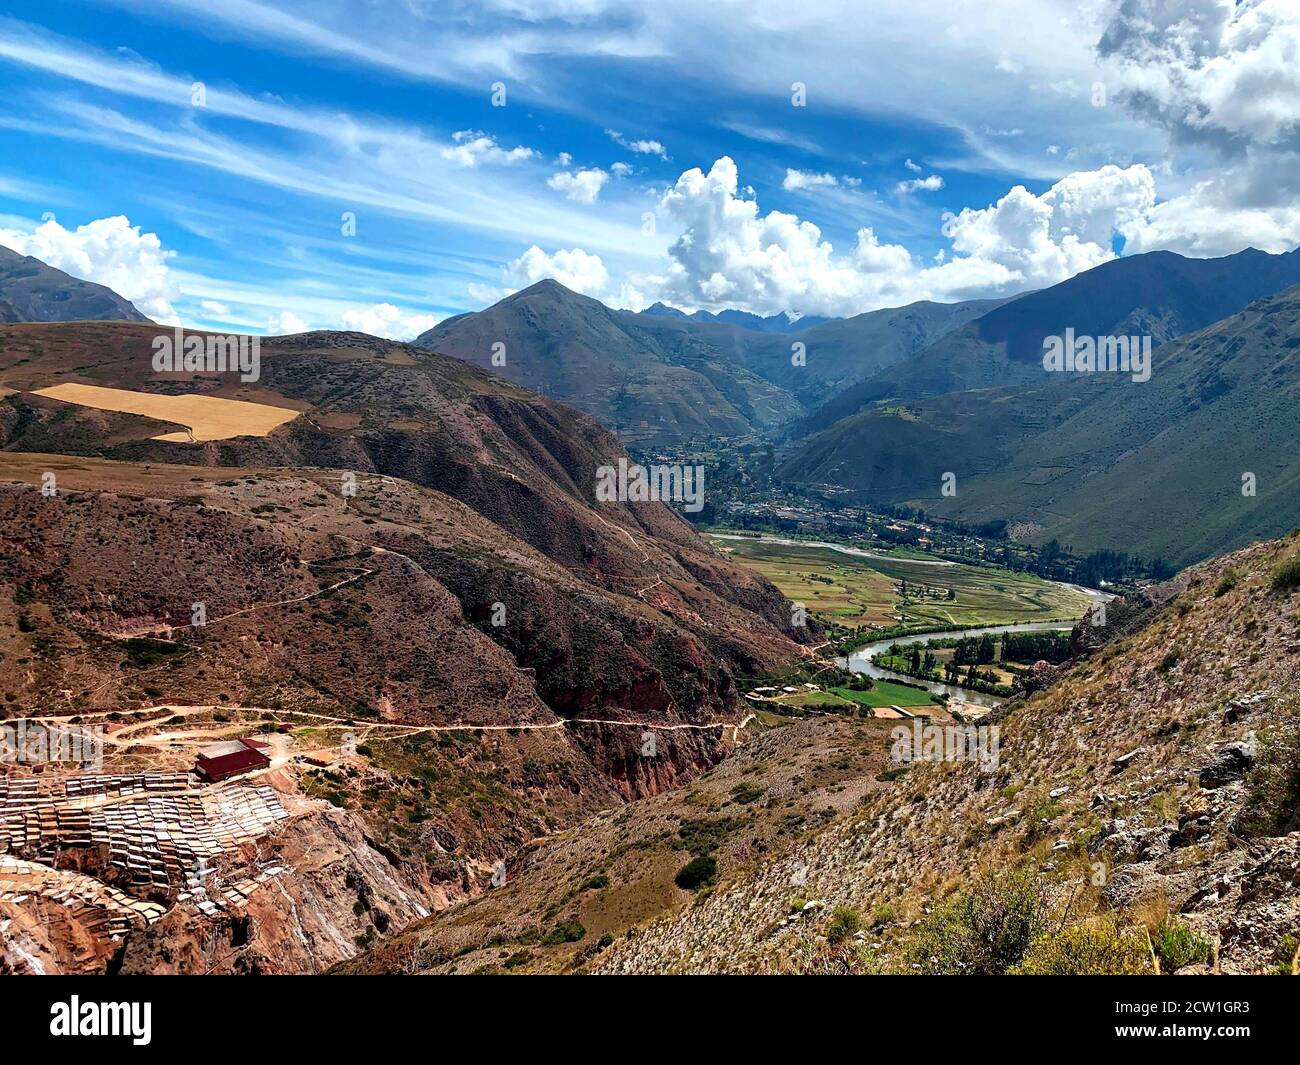 Vallée sacrée des Incas, région de Cusco, Pérou. Mines de sel Salineras de Maras. Montagnes des Andes. Magnifique paysage de campagne. Banque D'Images